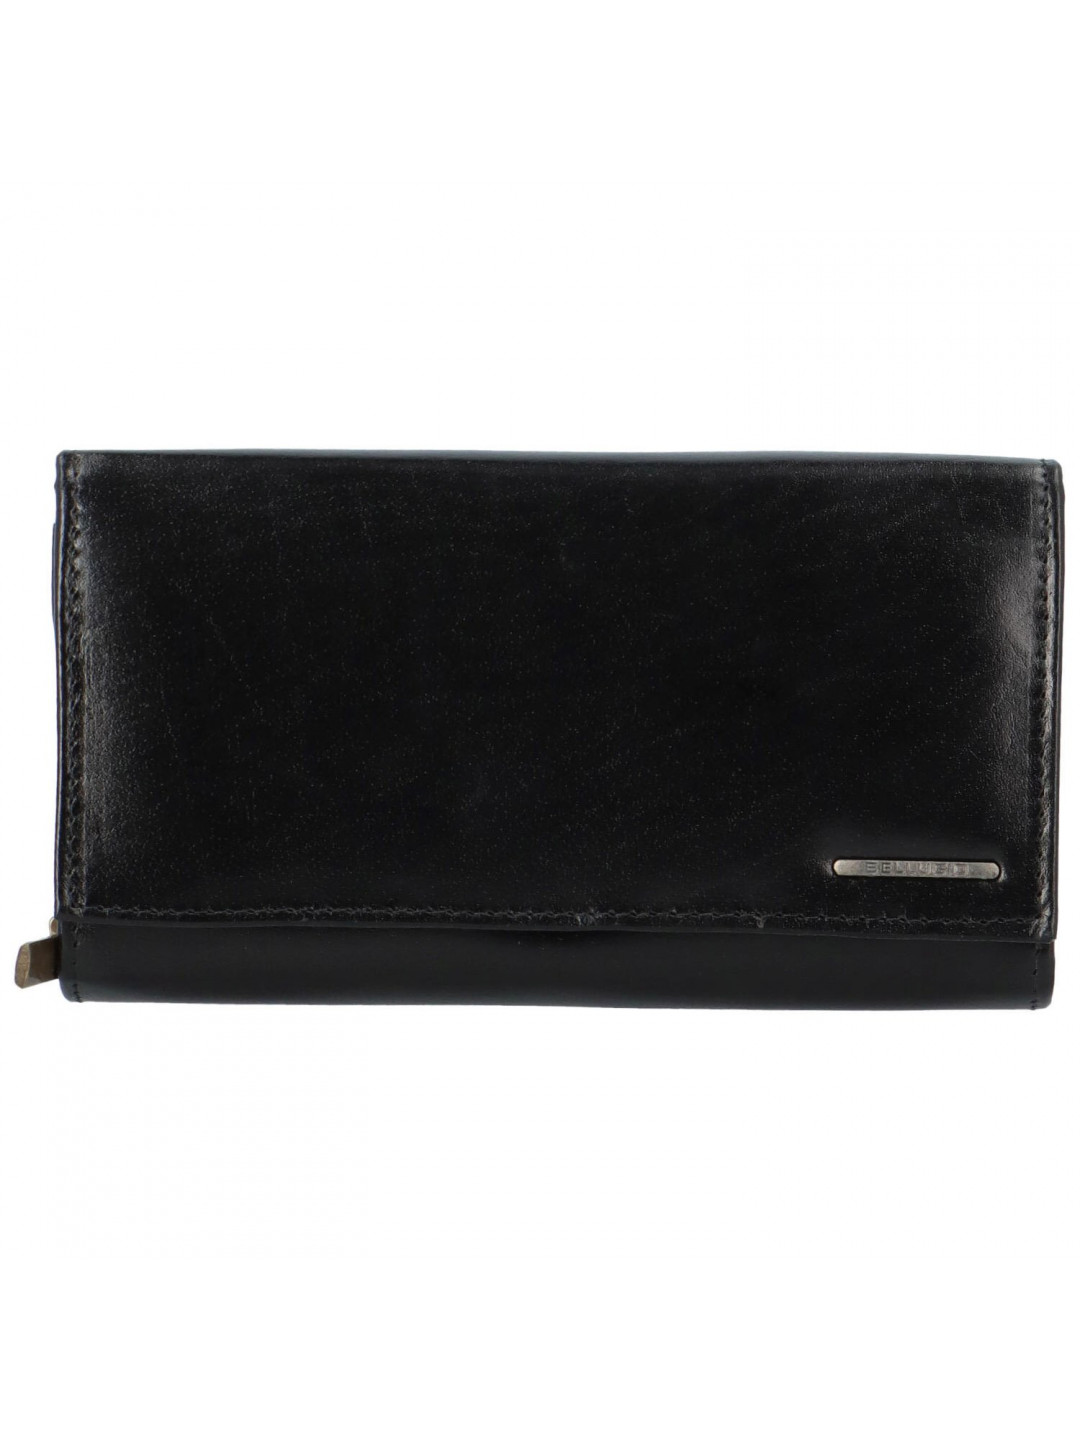 Dámská kožená peněženka černá – Bellugio Sandra